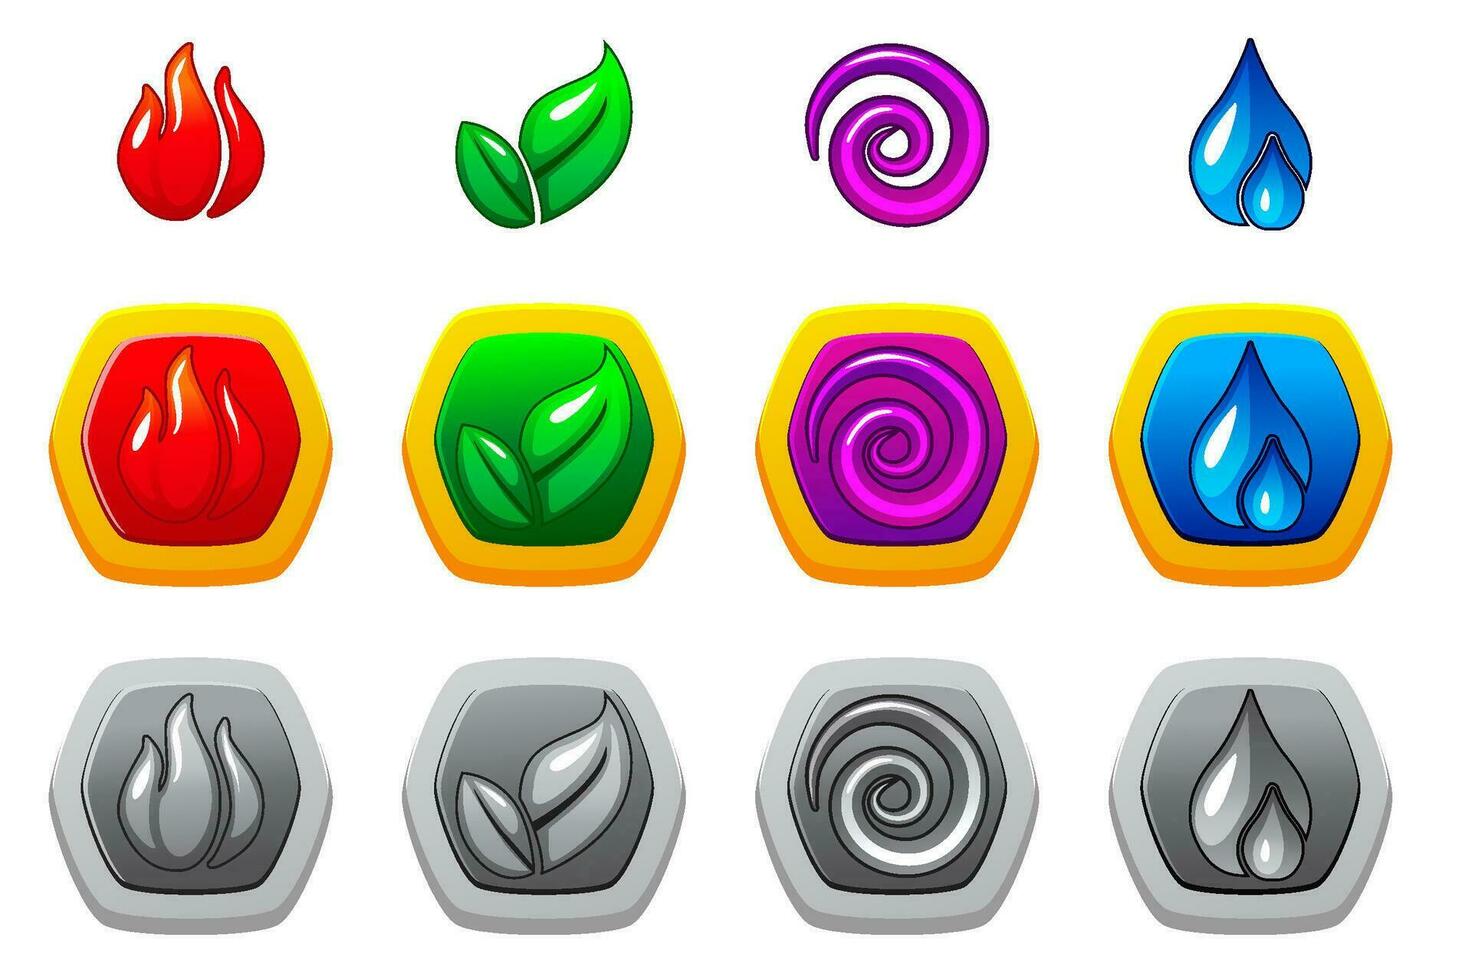 de fyra element av natur - brand, luft, jorden, och vatten i annorlunda varianter och färger. uppsättning av ikoner för de spel. vektor